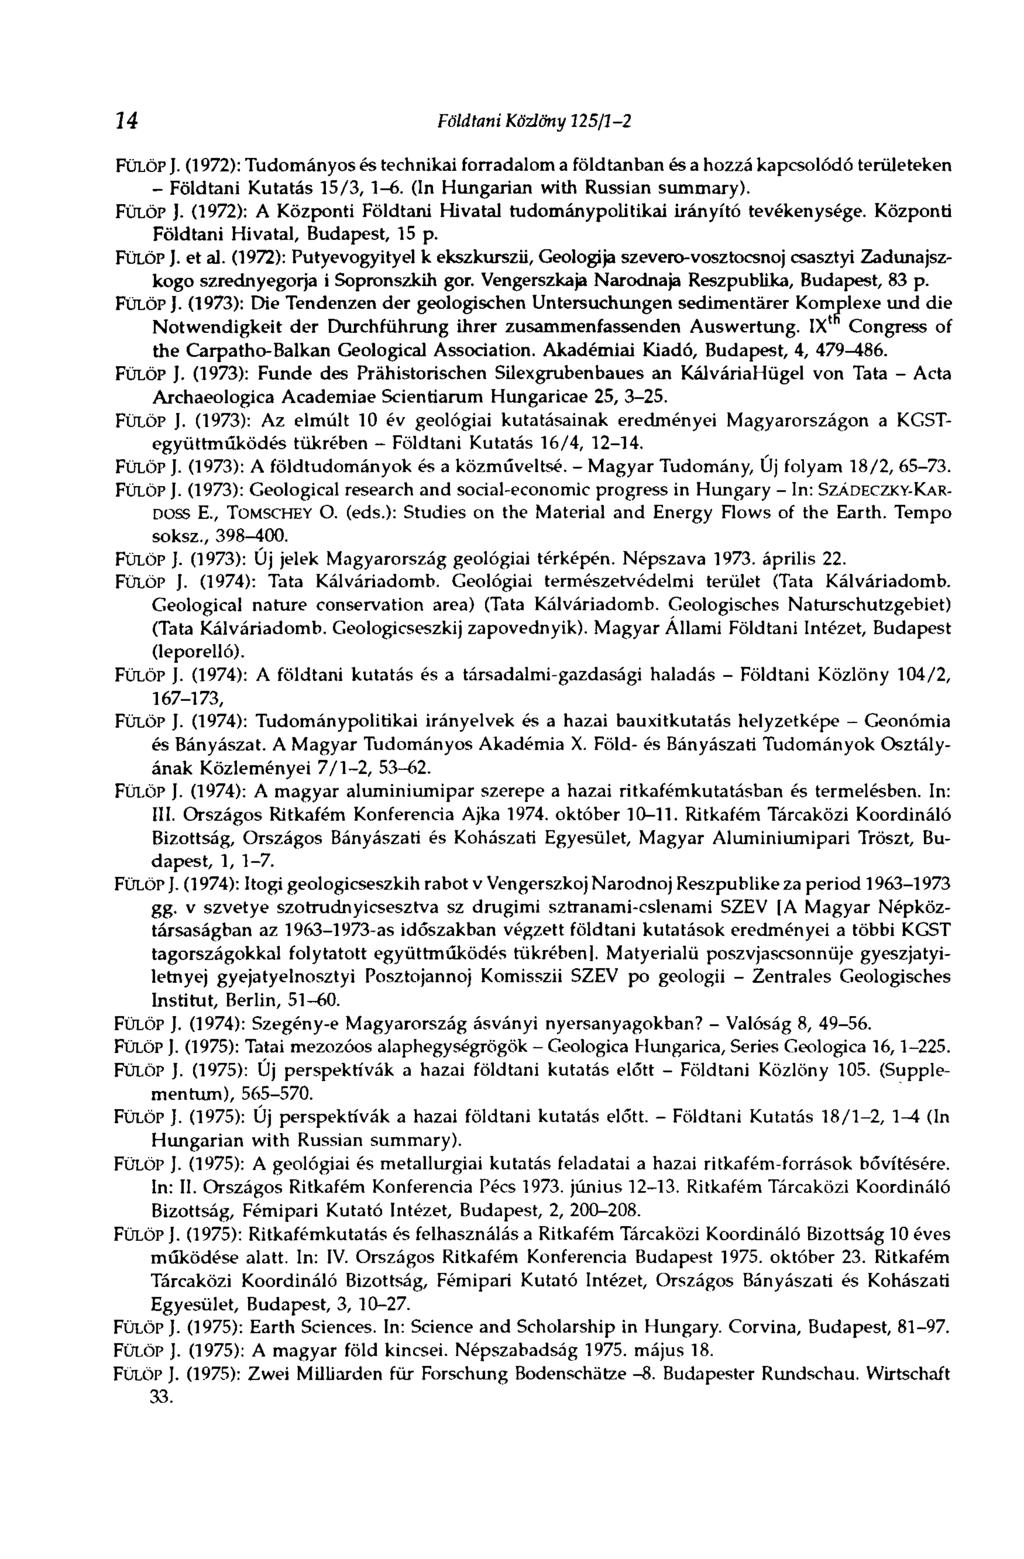 14 Földtani Közlöny 125/1-2 FÜLÖP J. (1972): Tudományos és technikai forradalom a földtanban és a hozzá kapcsolódó területeken - Földtani Kutatás 15/3, 1-6. (In Hungarian with Russian summary).